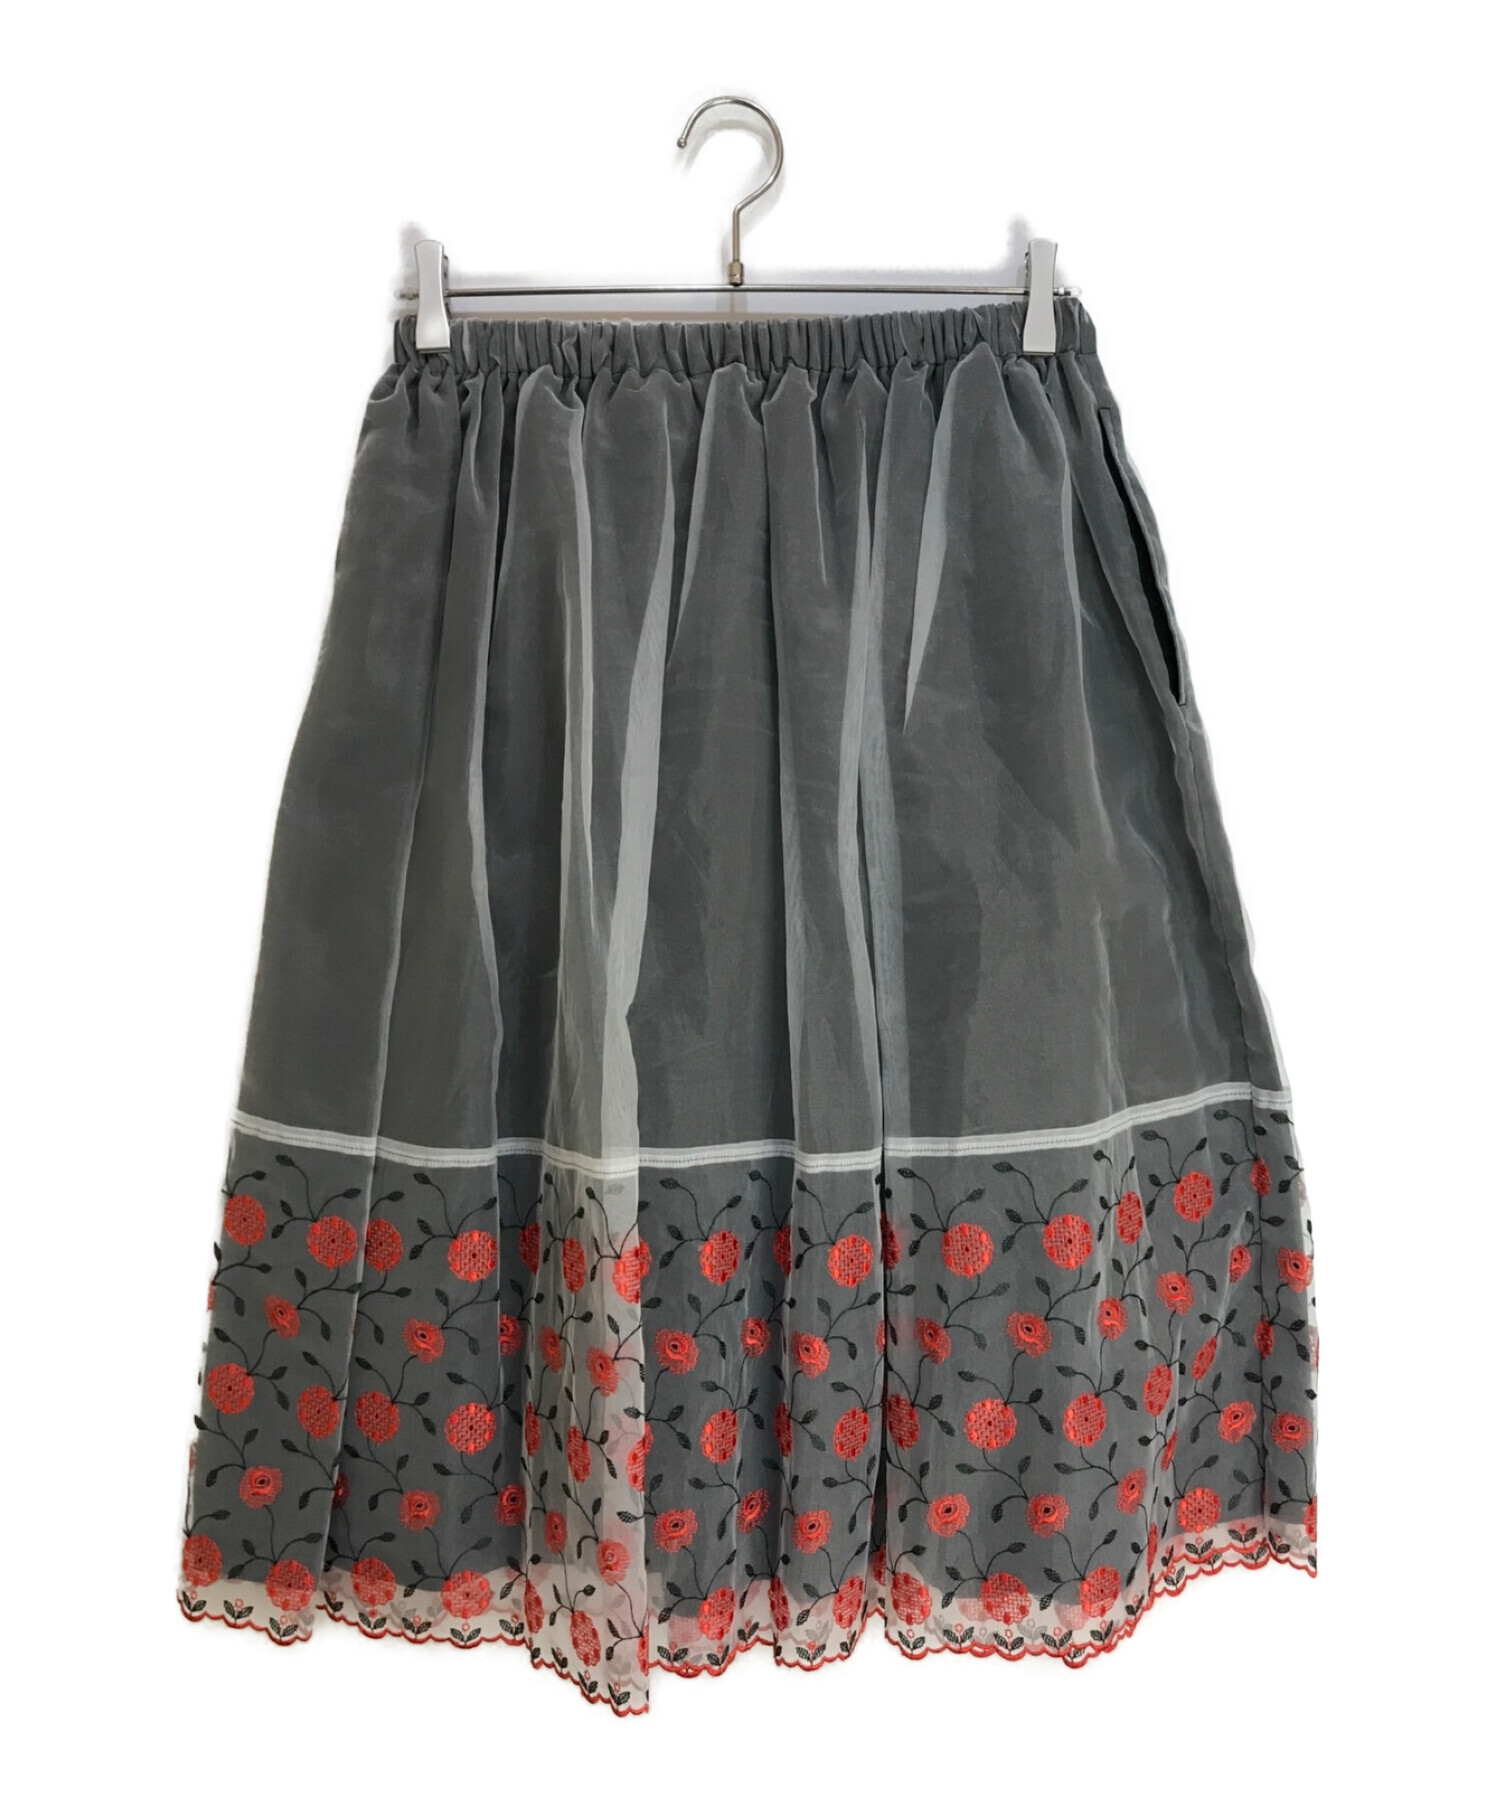 材質ポリエステル100%【お値下げ可】tricot COMME des GARCONS 刺繍スカート